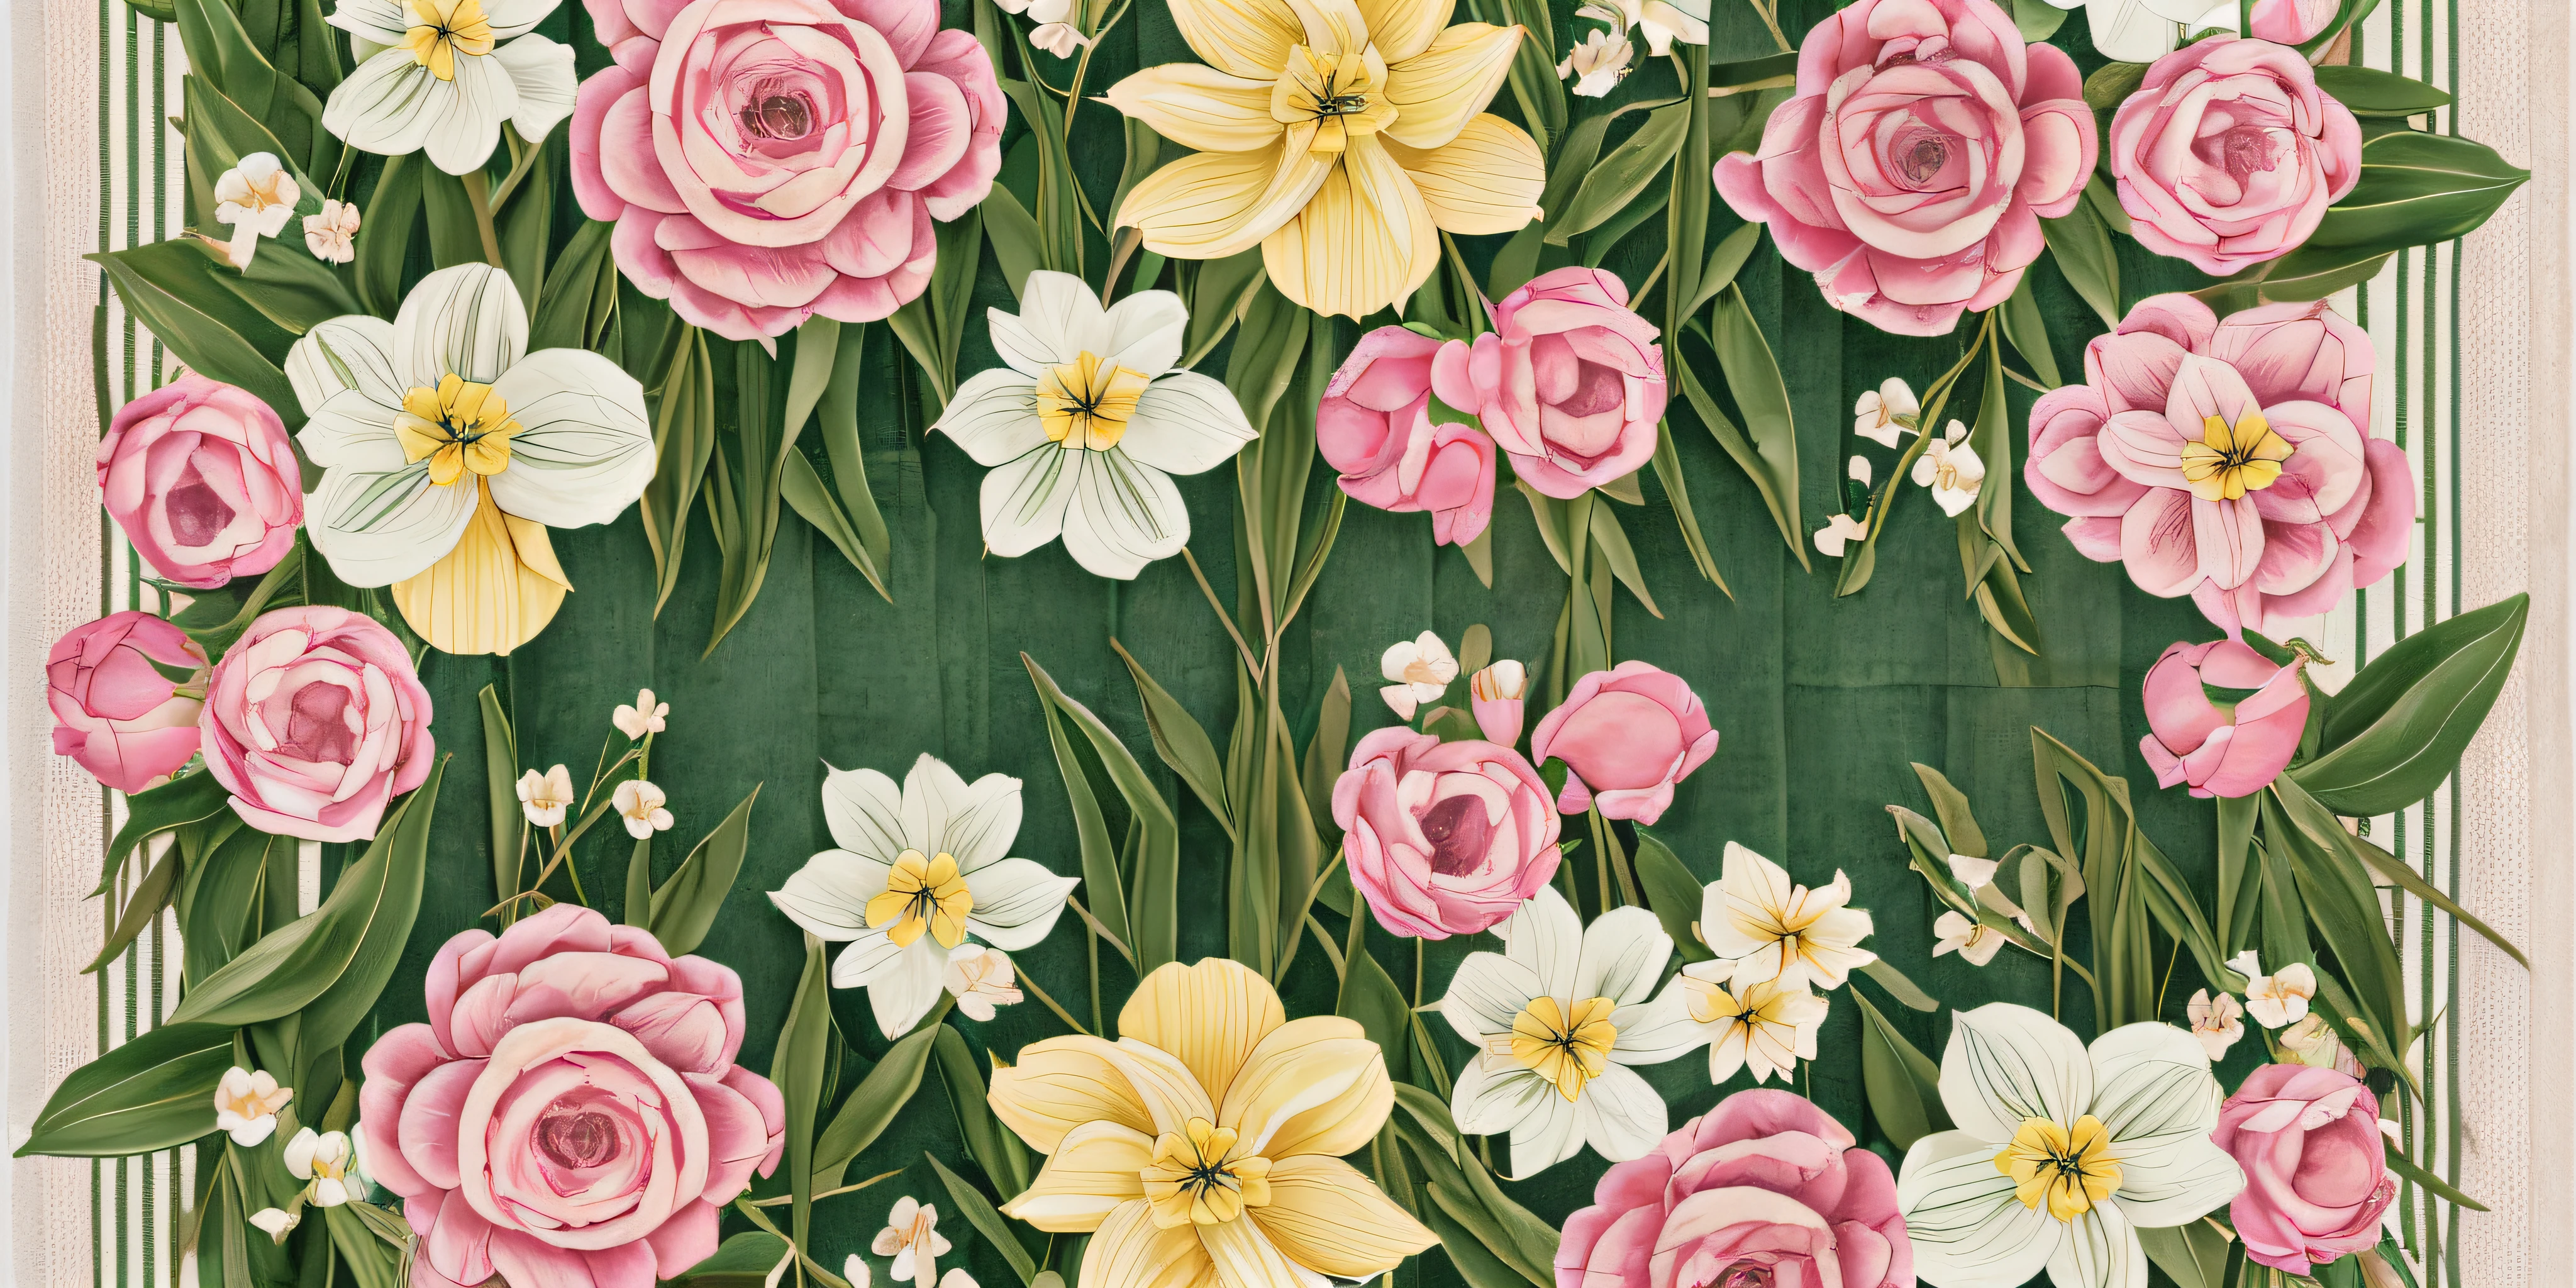 Проиллюстрировать 16:9 композиций, демонстрирующих эффектную барную стойку из роз и тюльпанов., Гортензии, и нарциссы, расположен горизонтально, чтобы напоминать декоративную ленту на махровом полотенце --auto --s2